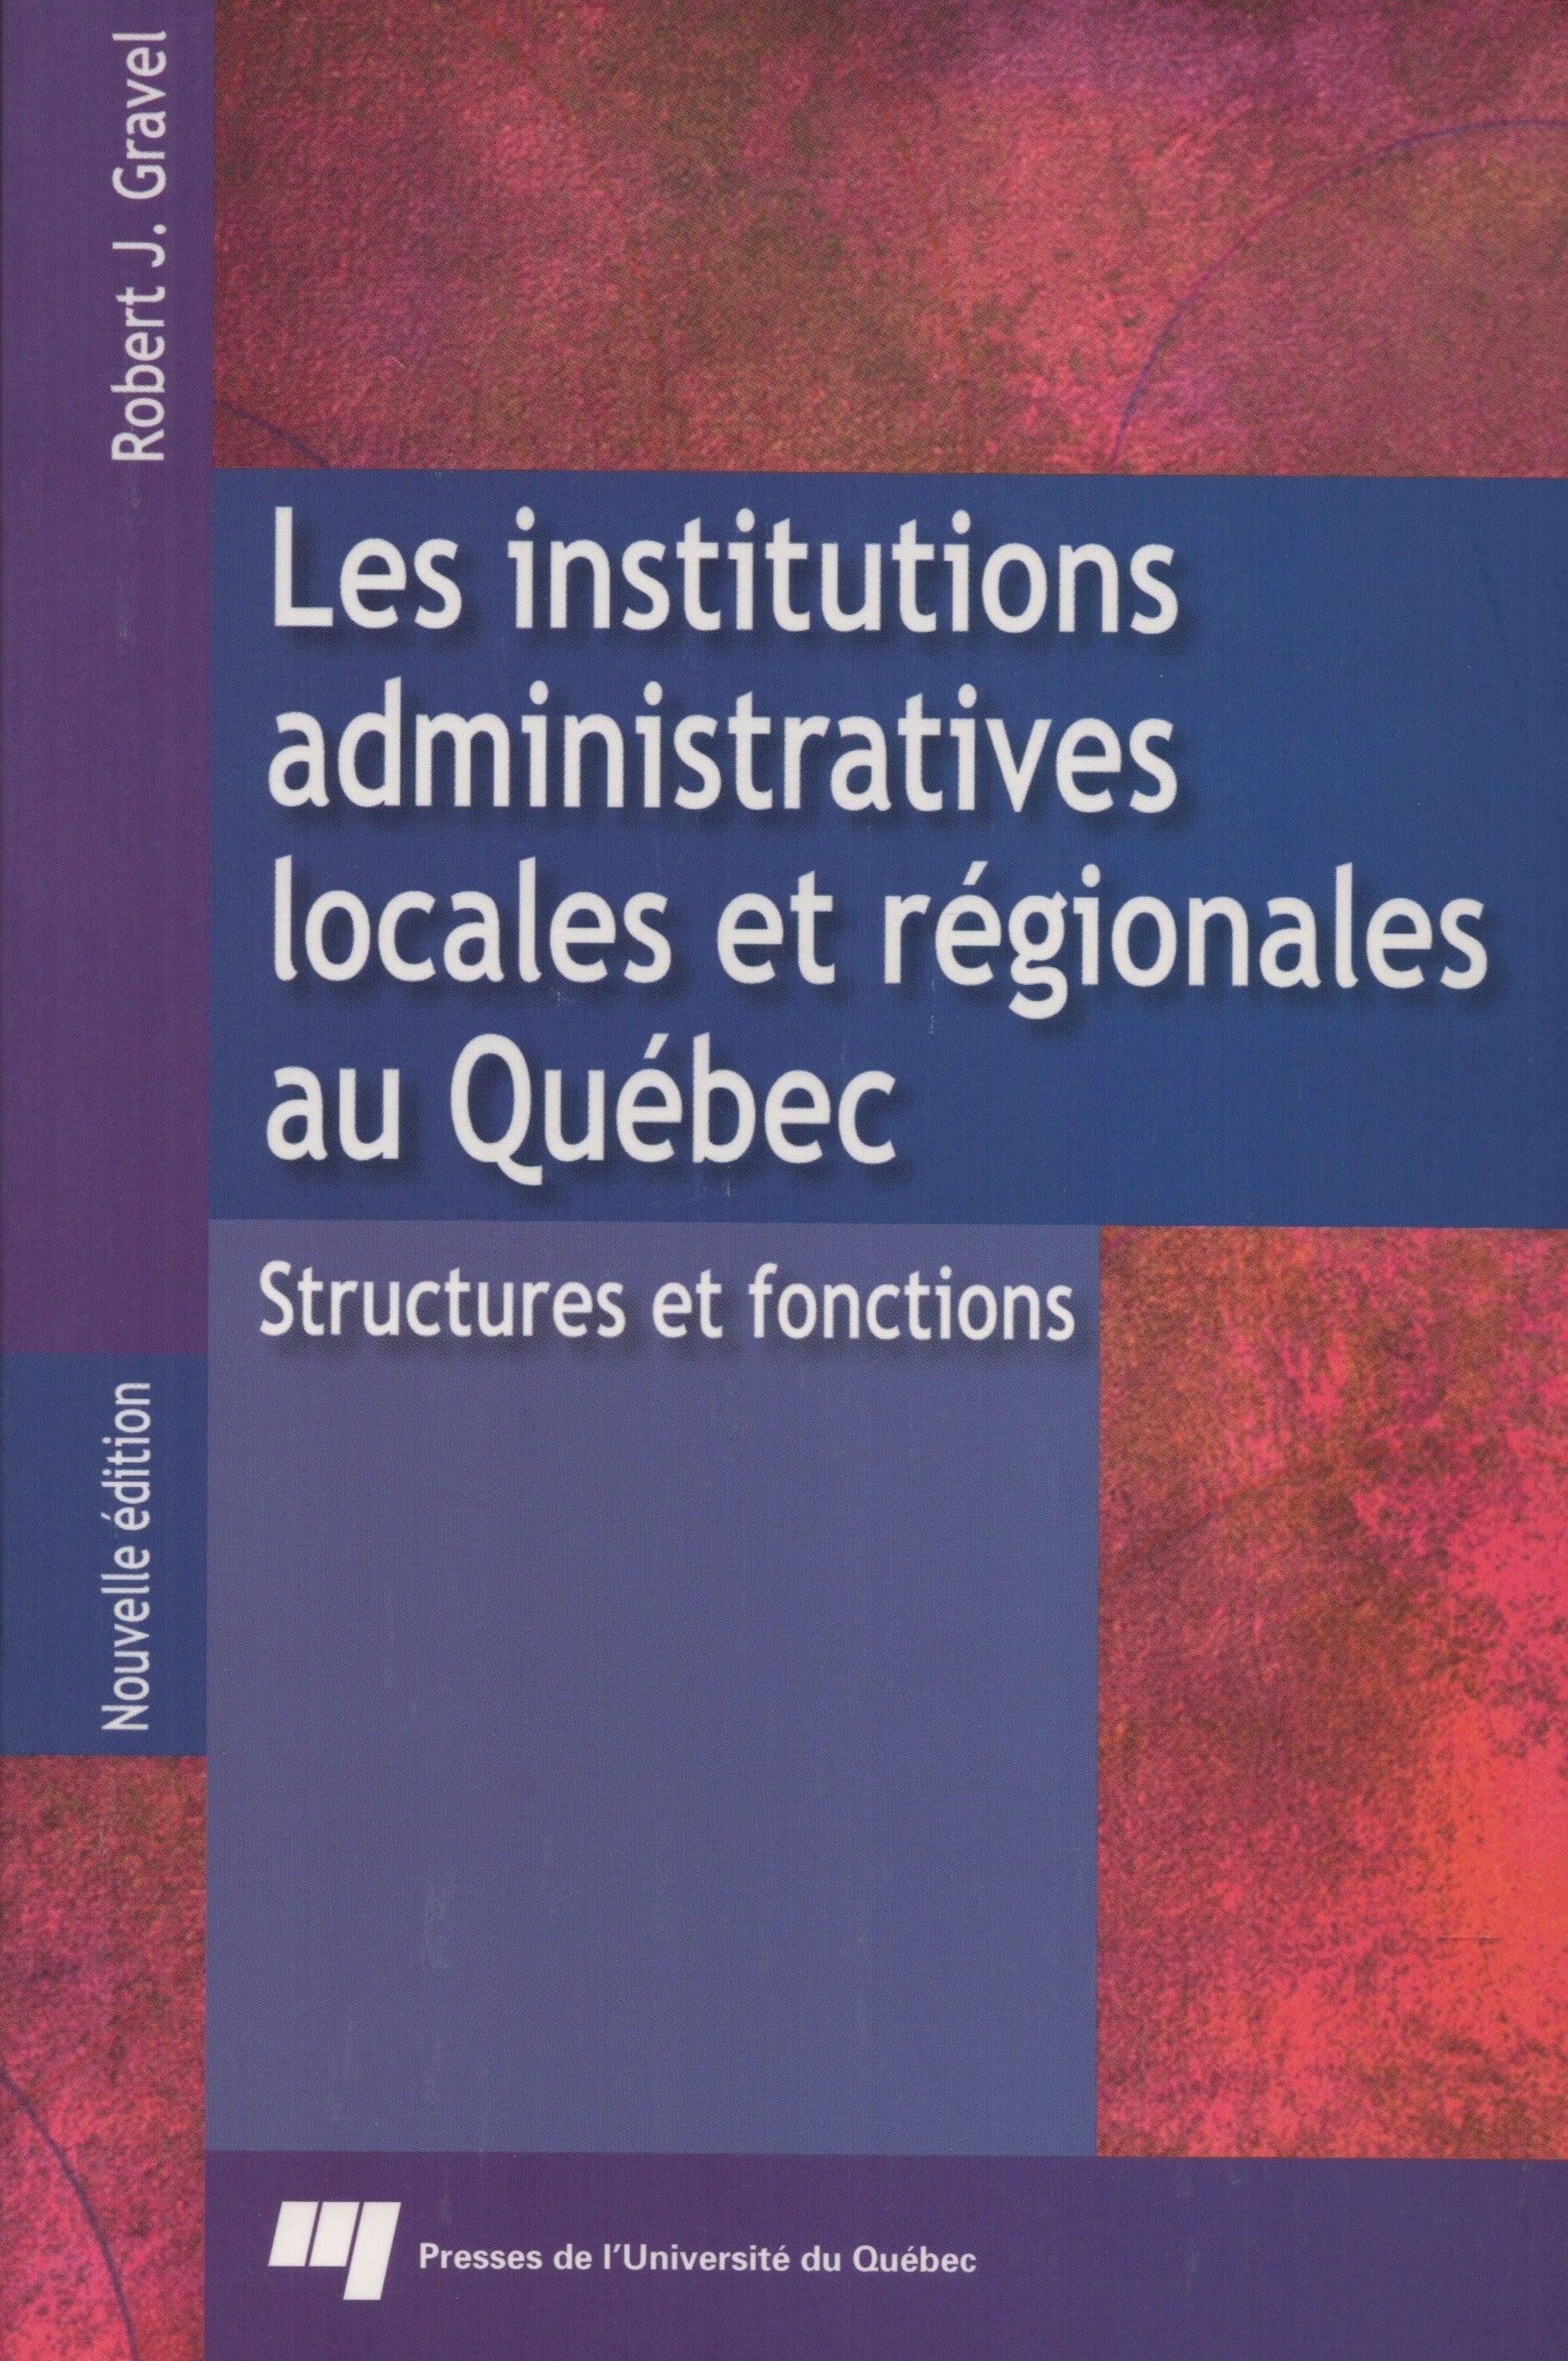 GRAVEL, ROBERT J. Institutions administratives locales et régionales au Québec (Les) : Structures et fonctions